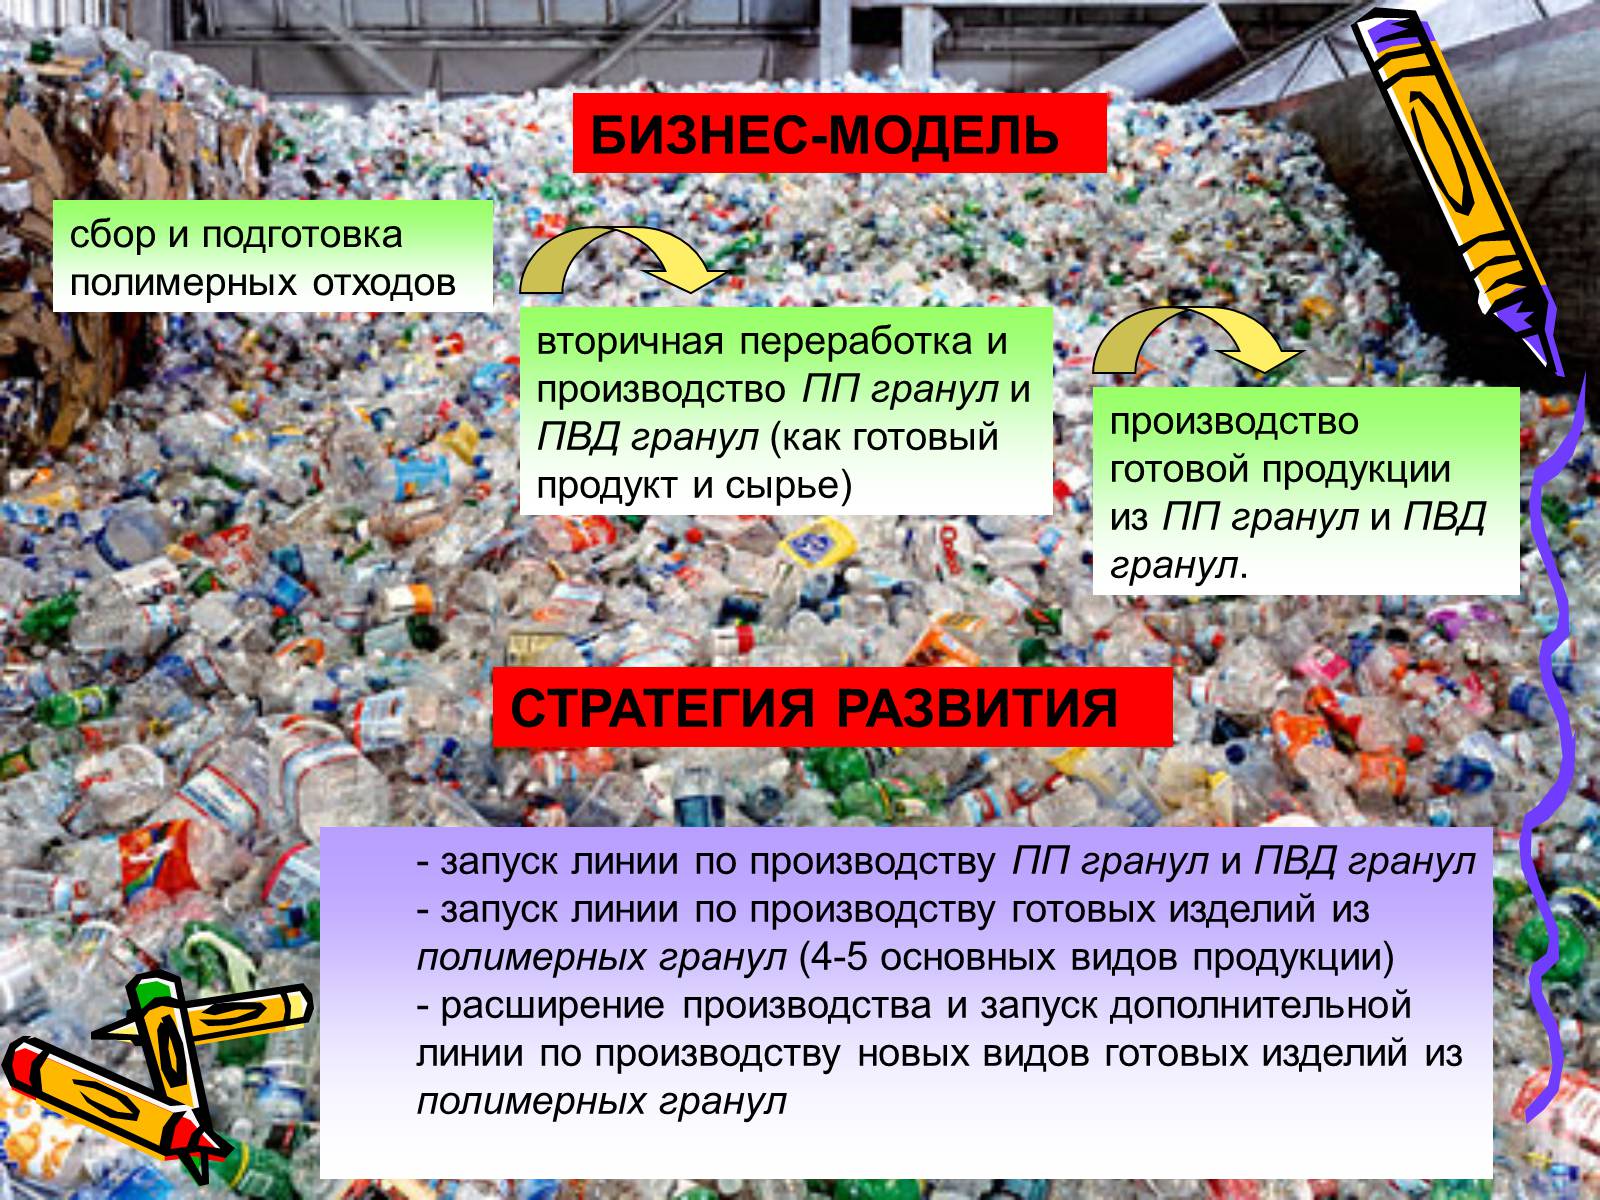 Рациональные использования отходов. Презентация на тему отходы. Проект на тему утилизация отходов. Проект по утилизации пластикового мусора. Примеры переработки мусора.